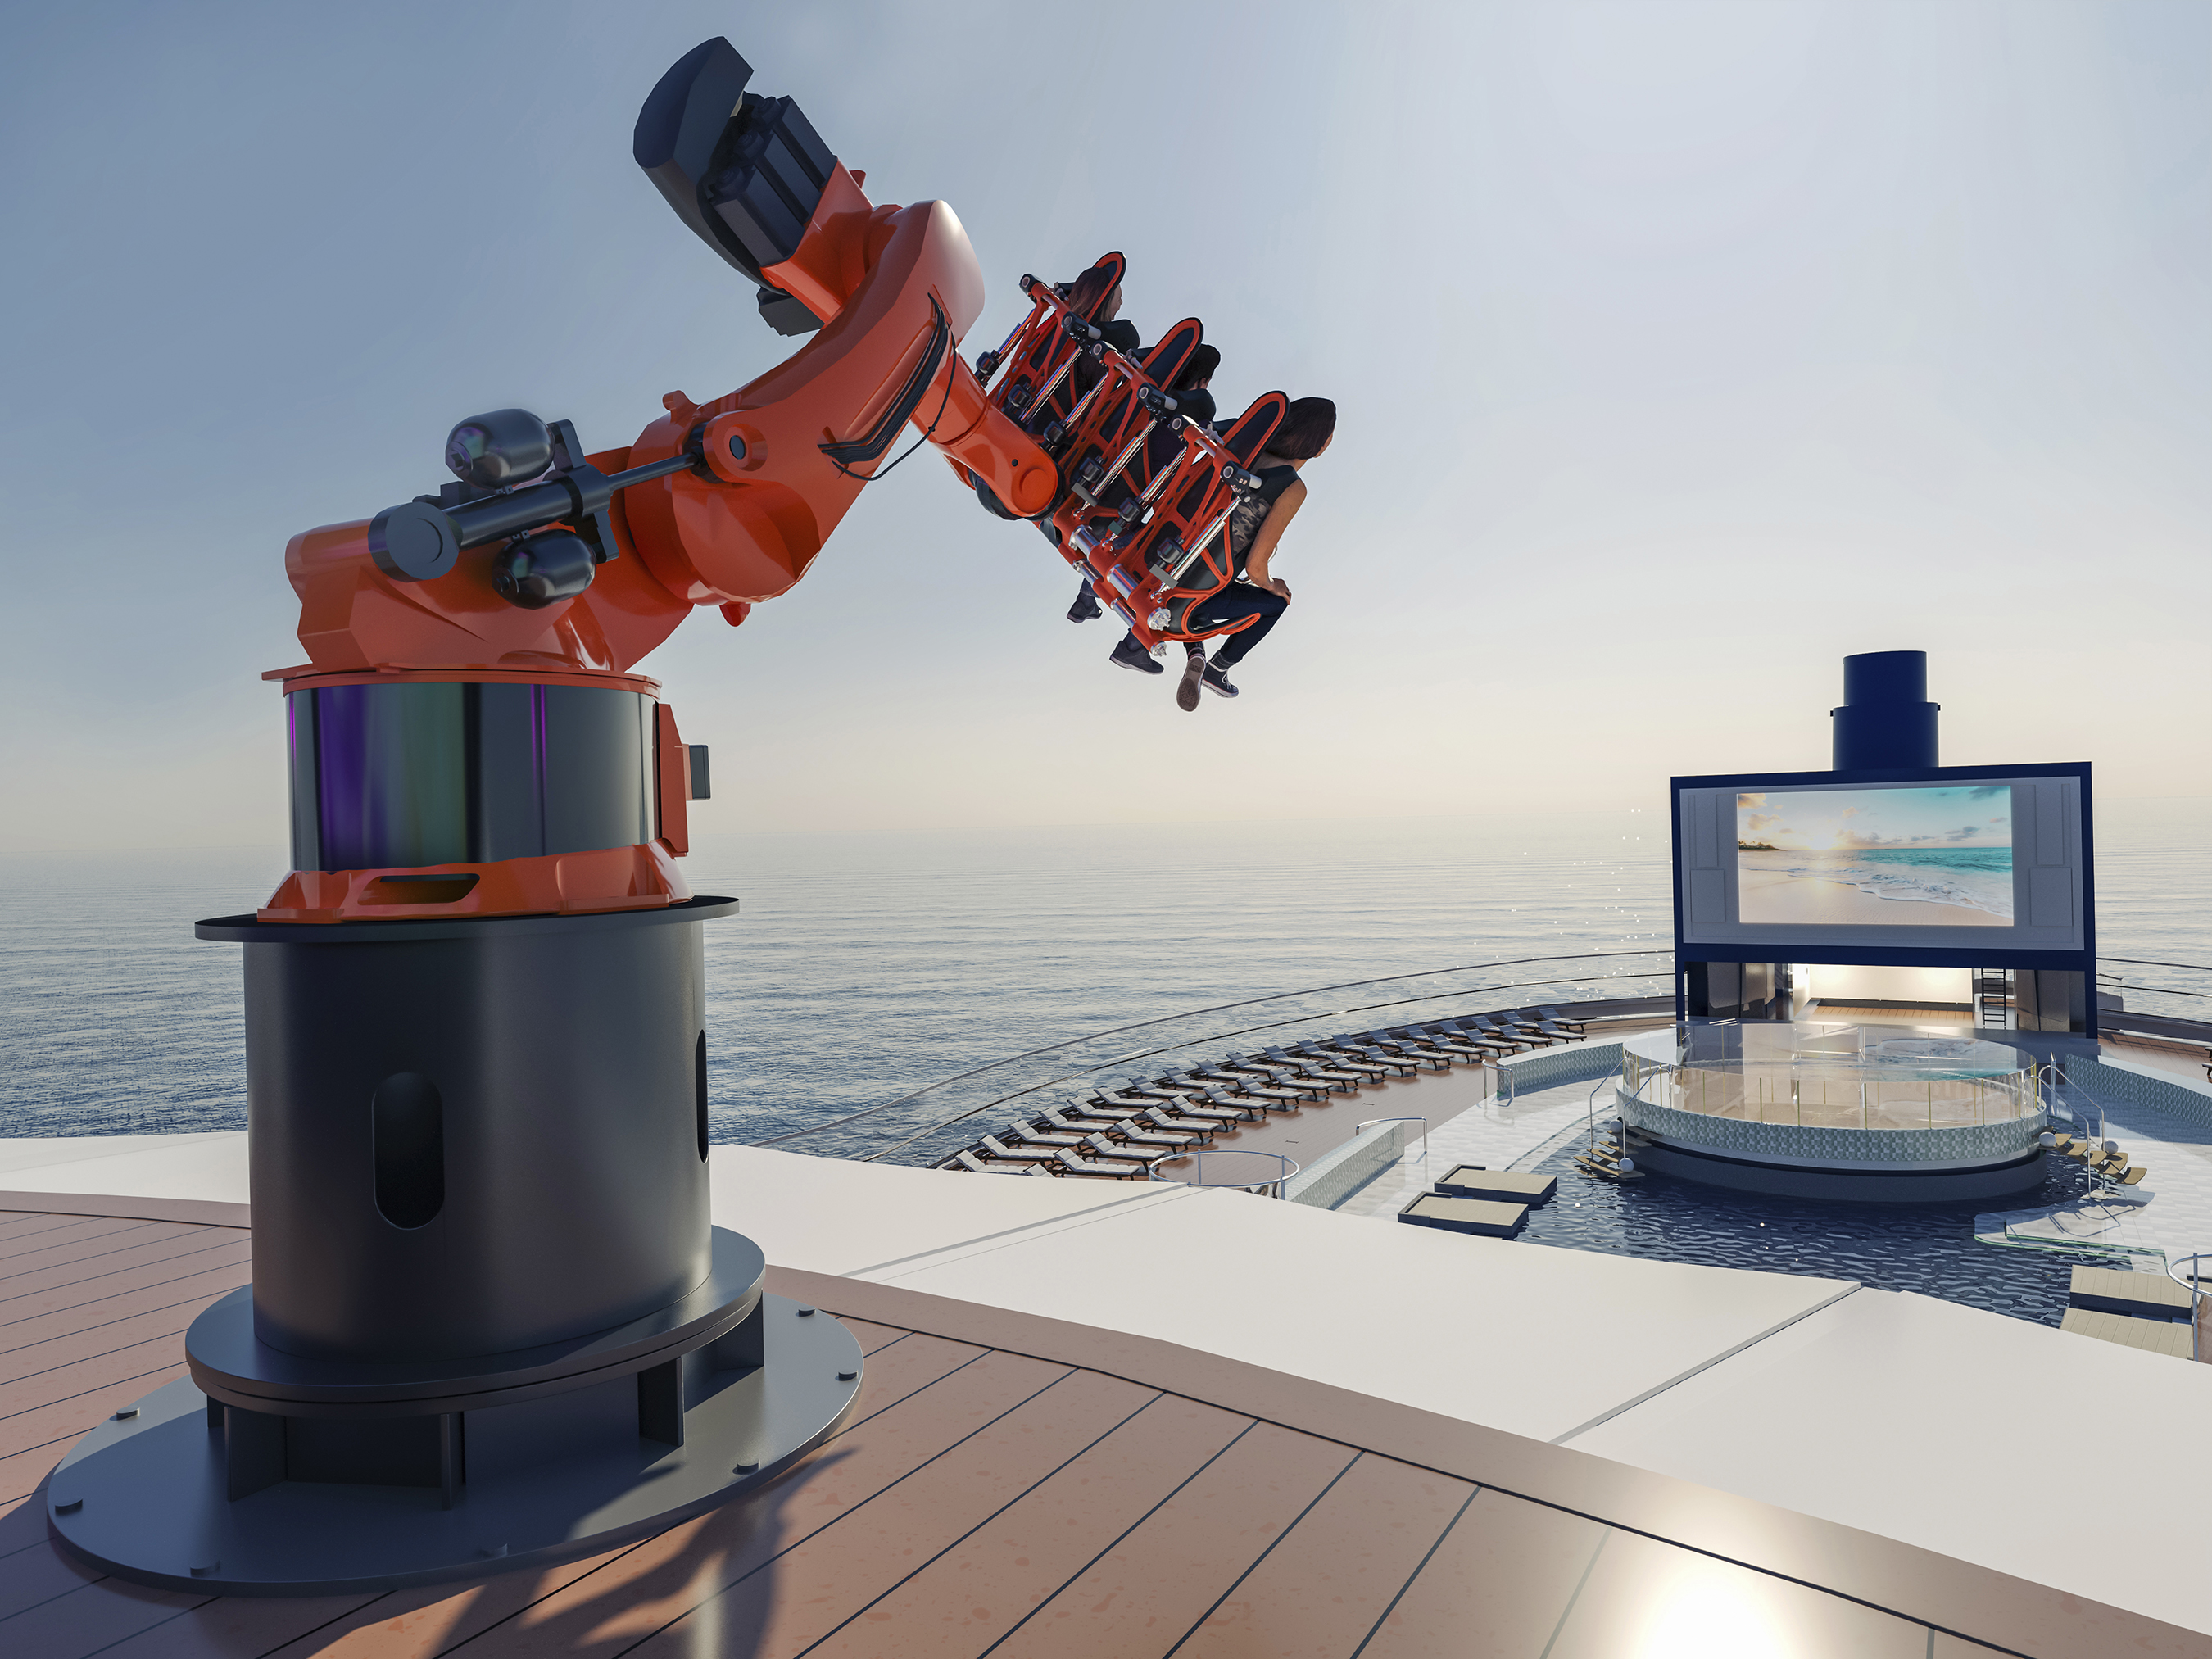 ROBOTRON de MSC Cruceros será el primer paseo en brazo robótico en el mar.